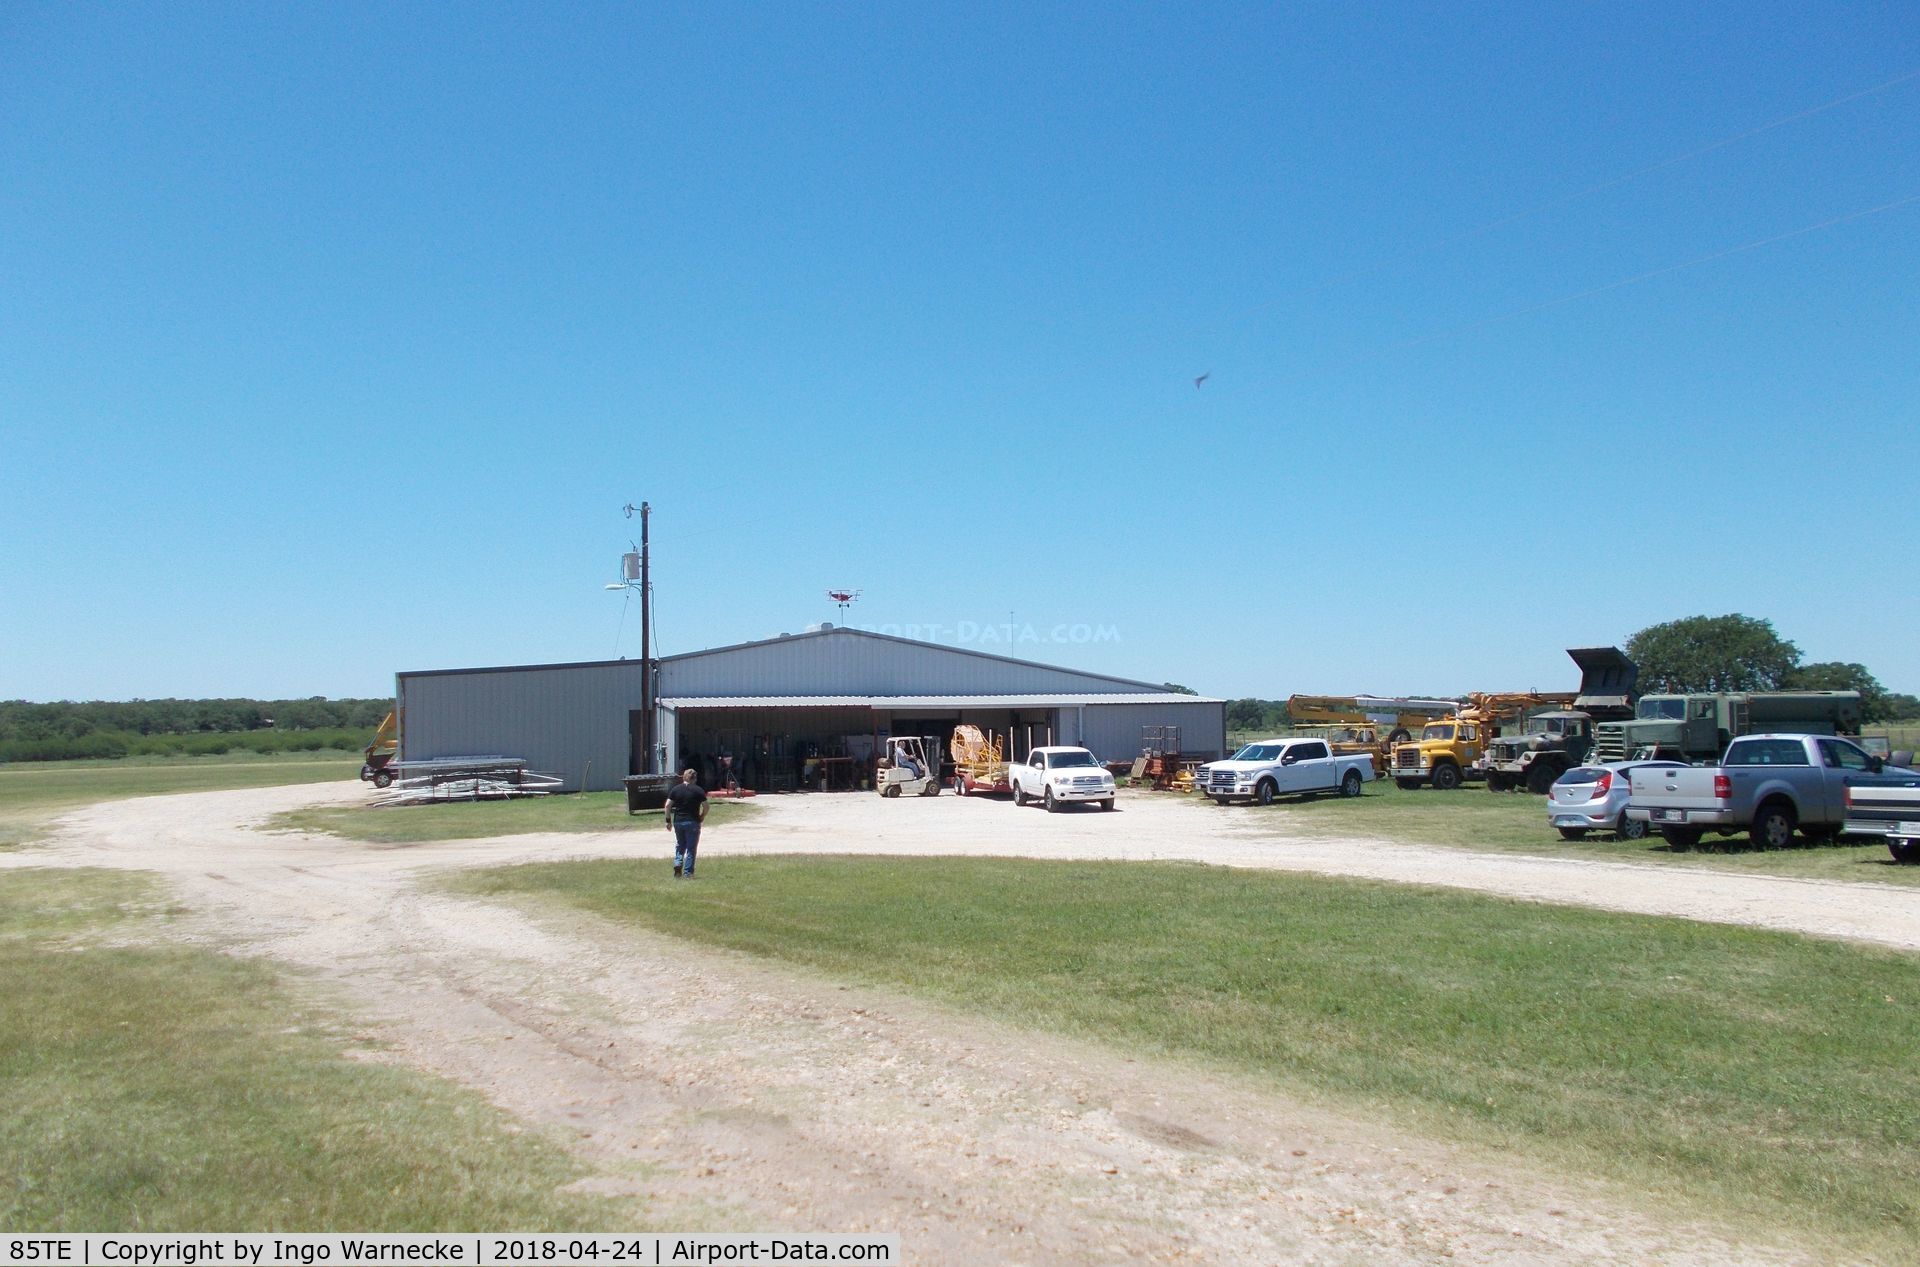 Old Kingsbury Aerodrome Airport (85TE) - the workshop hangar of the Pioneer Flight Museum at the Old Kingsbury Aerodrome, Kingsbury TX